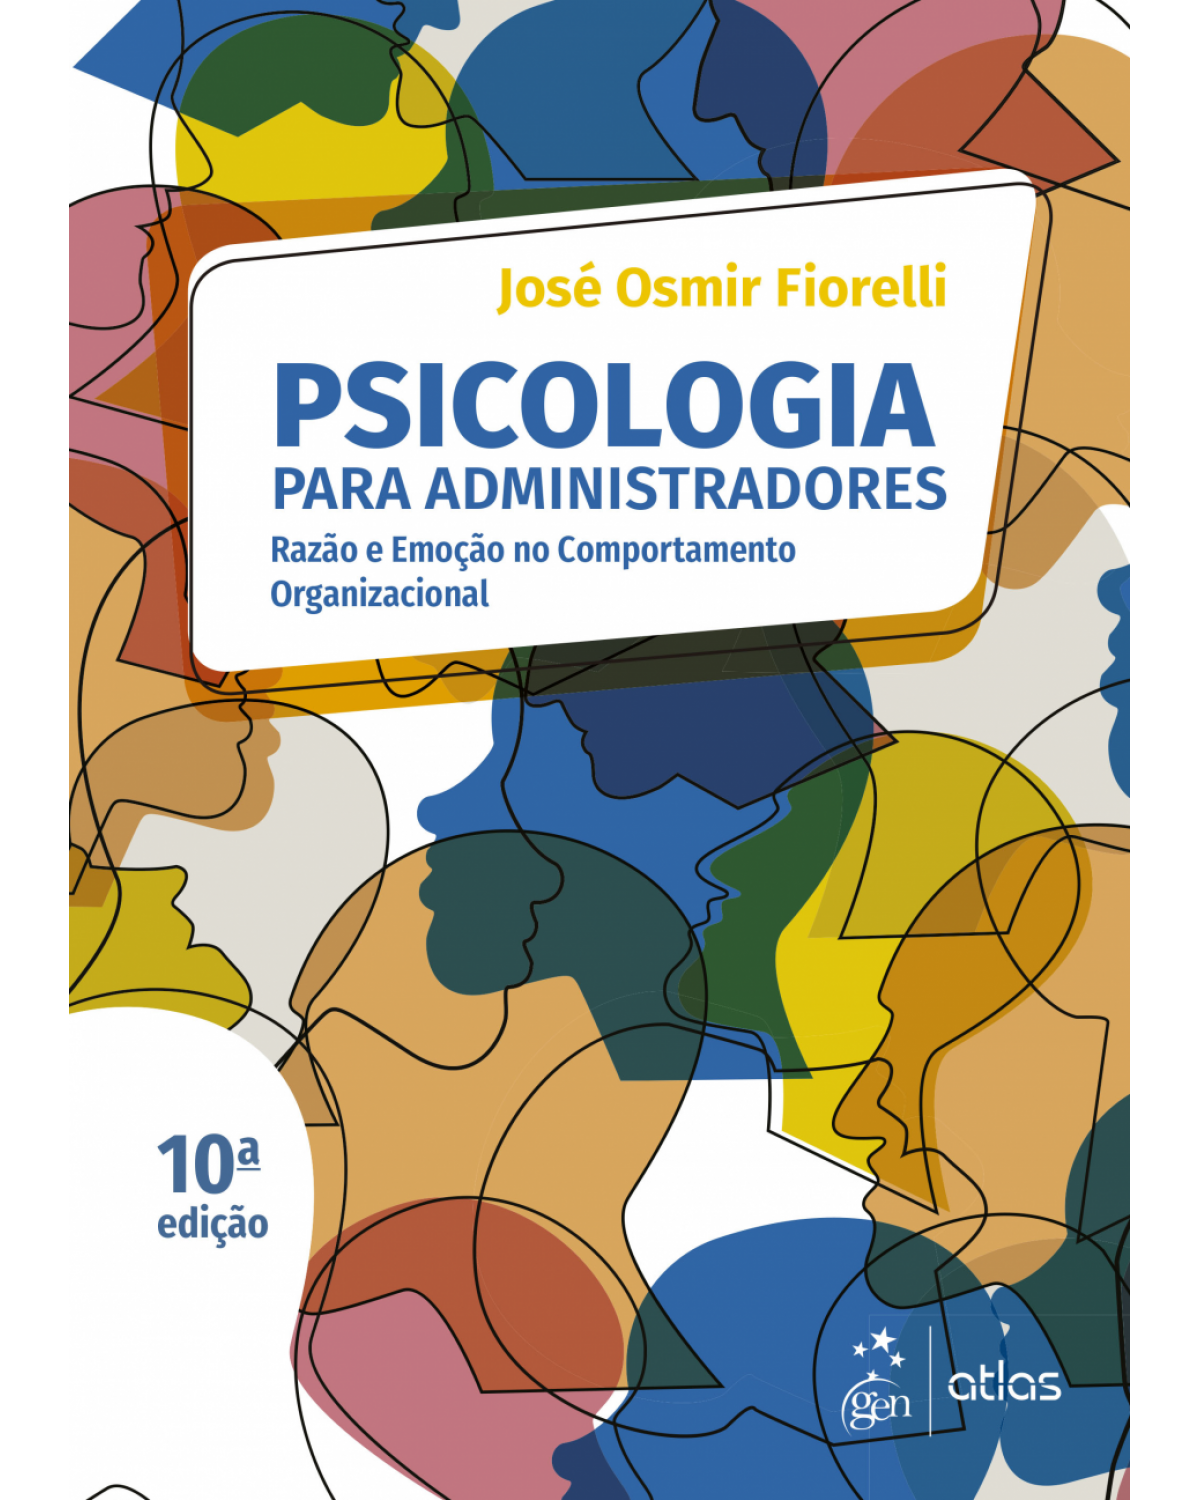 Psicologia para administradores - razão e emoção no comportamento organizacional - 10ª Edição | 2018